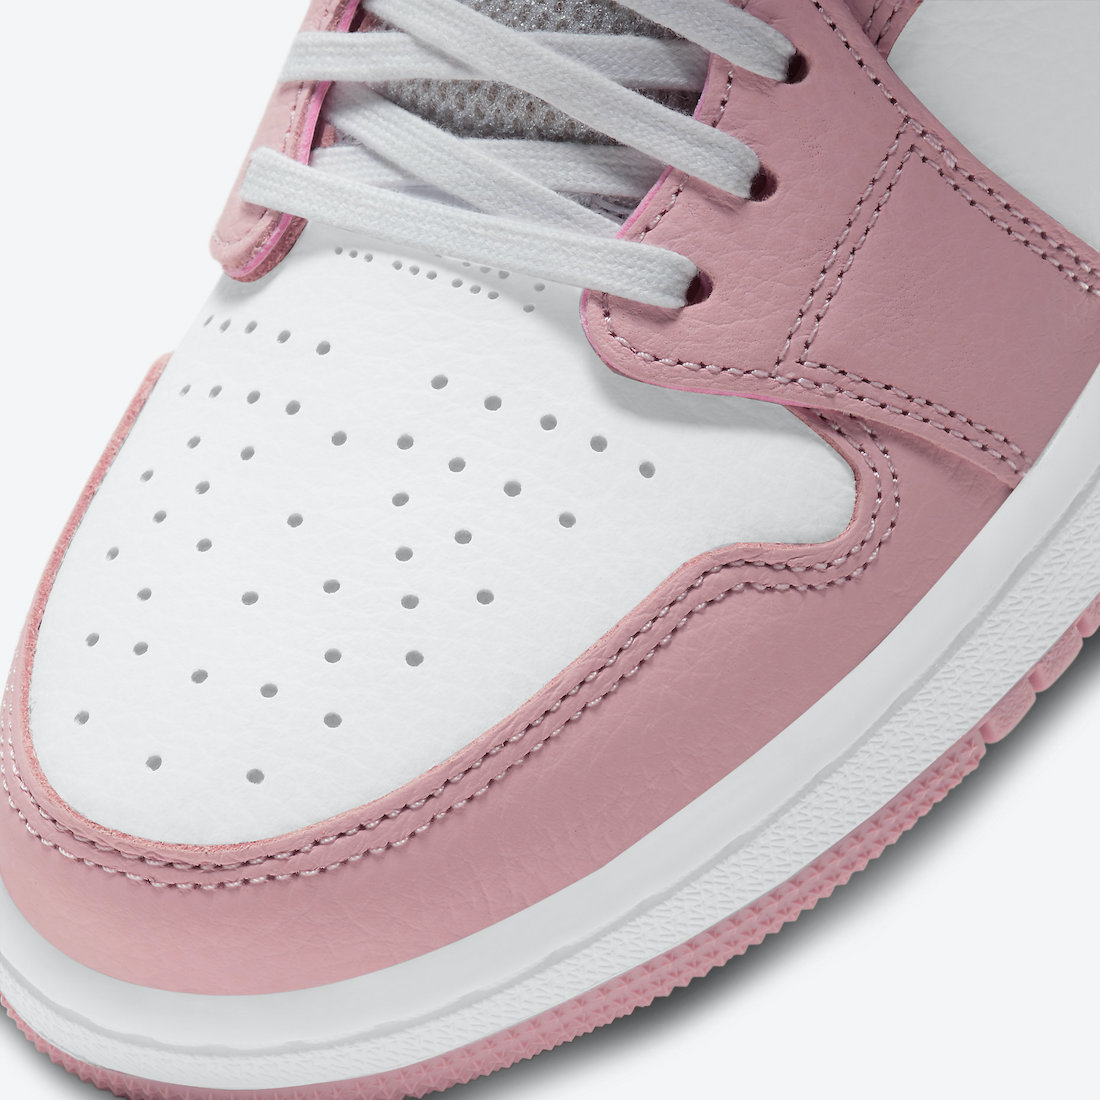 ナイキ エア ジョーダン 1 ズーム コンフォート ピンク グレイズ Nike Air Jordan 1 Zoom Comfort Pink Glaze CT0979-601 toe